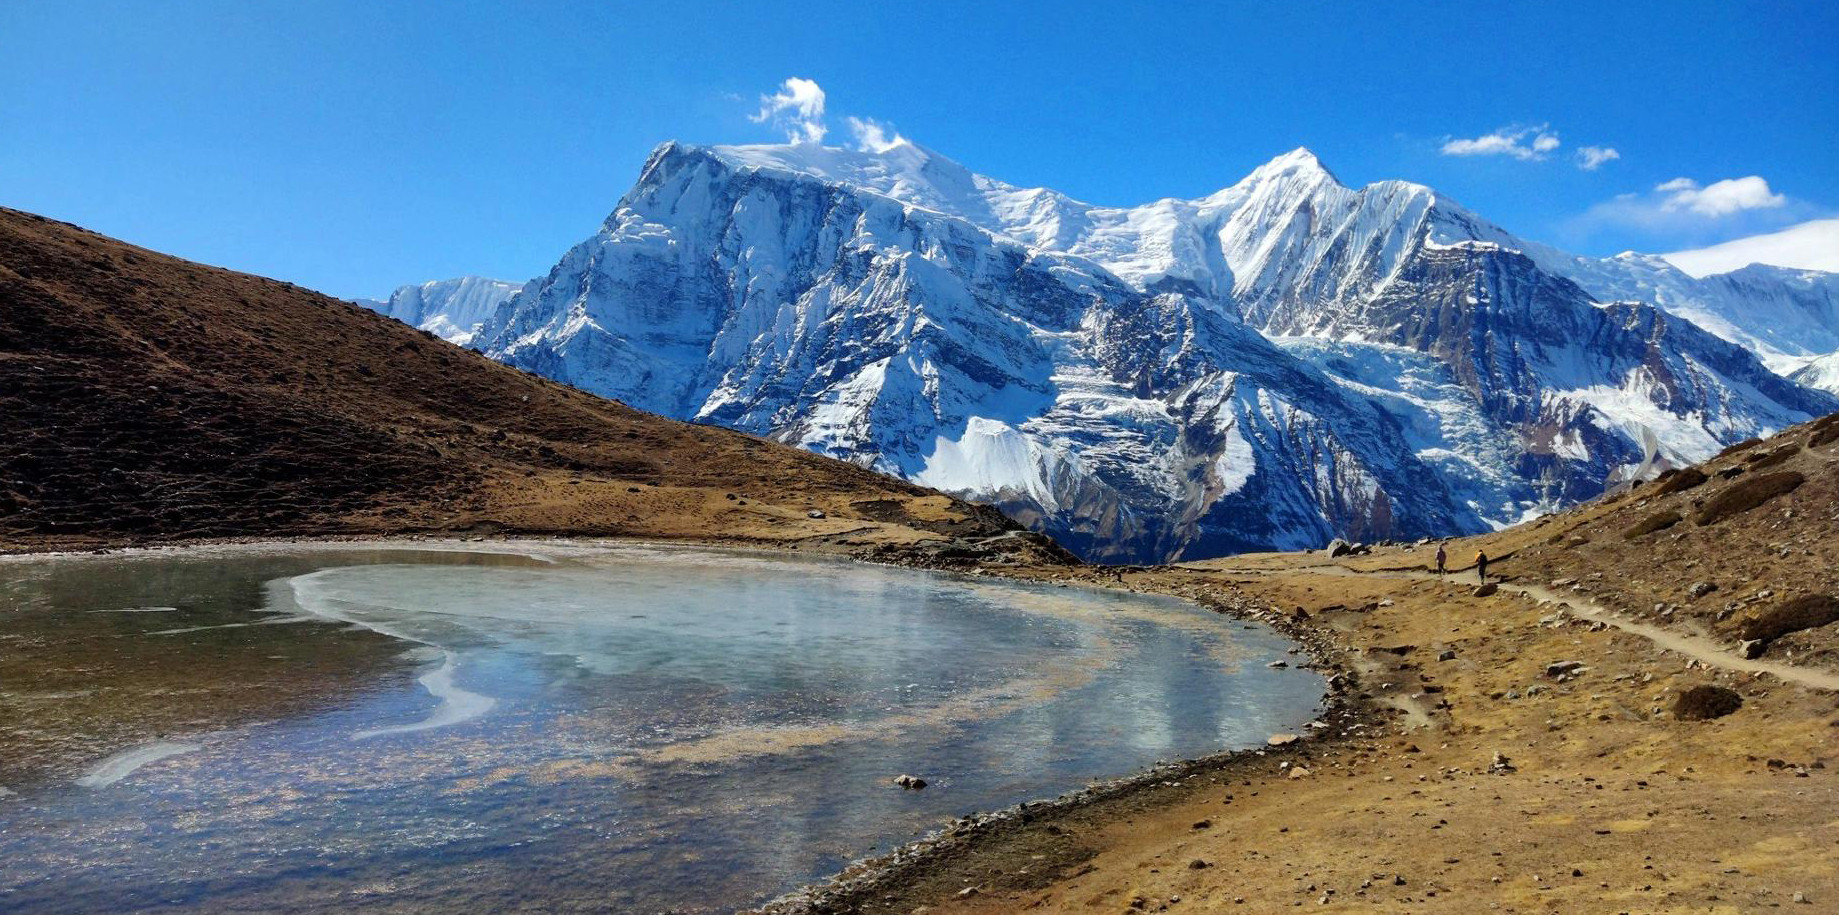 'हिमालय क्षेत्रमा खतराको घण्टी बजिरहेको छ, सङ्कट सामनाका लागि तयार रहनुको विकल्प छैन'